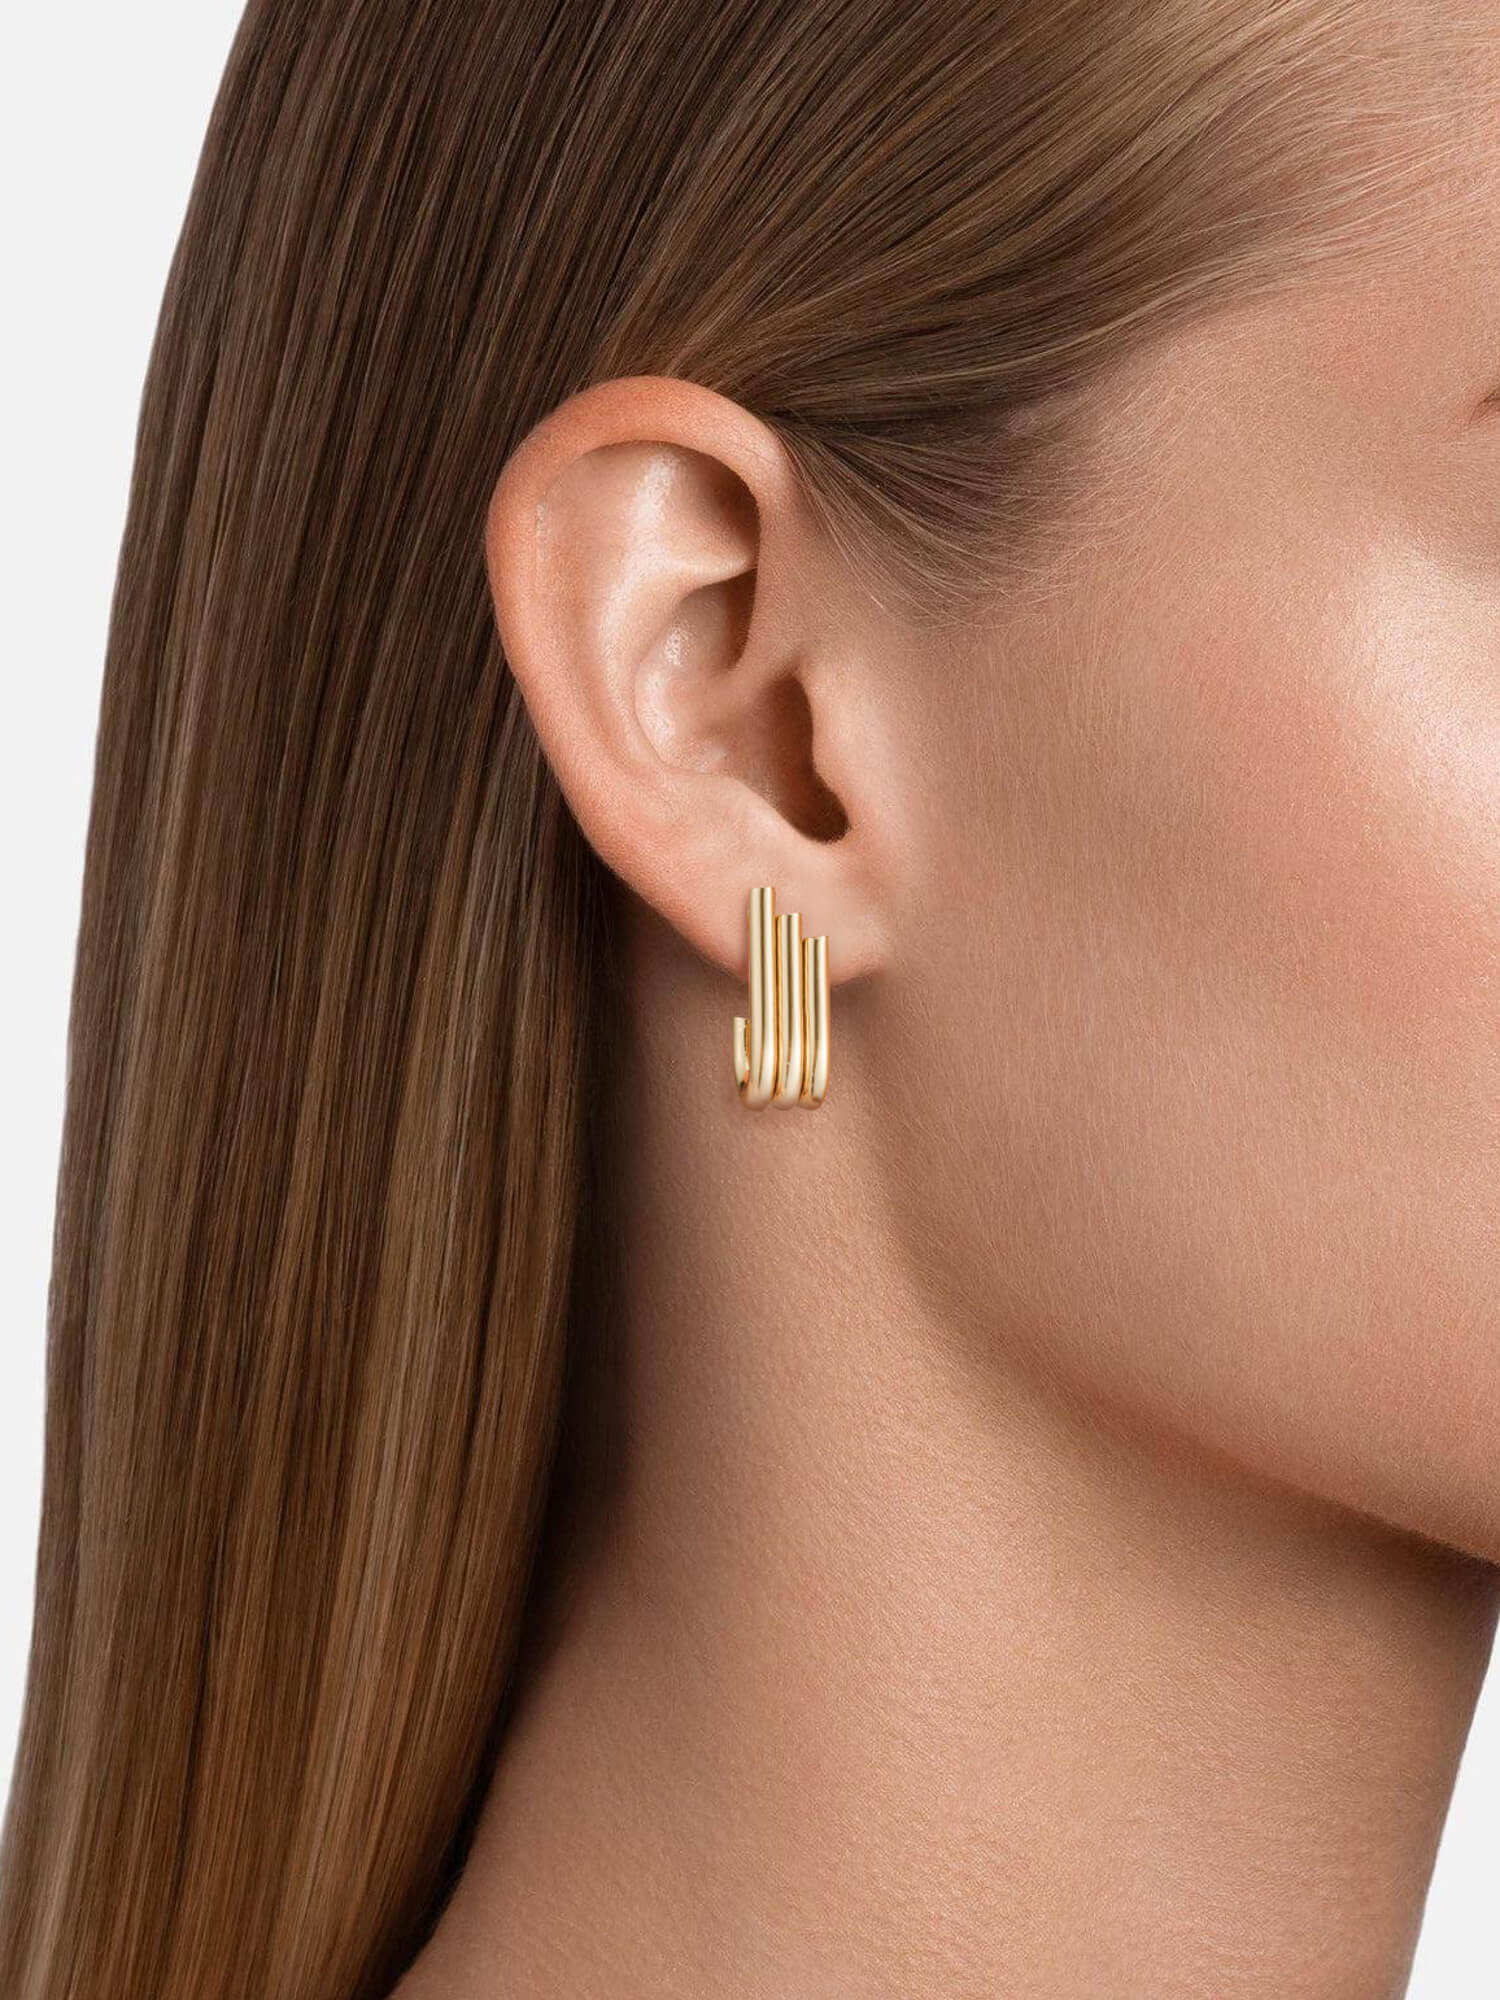 Gold Little Wing Earrings On Women